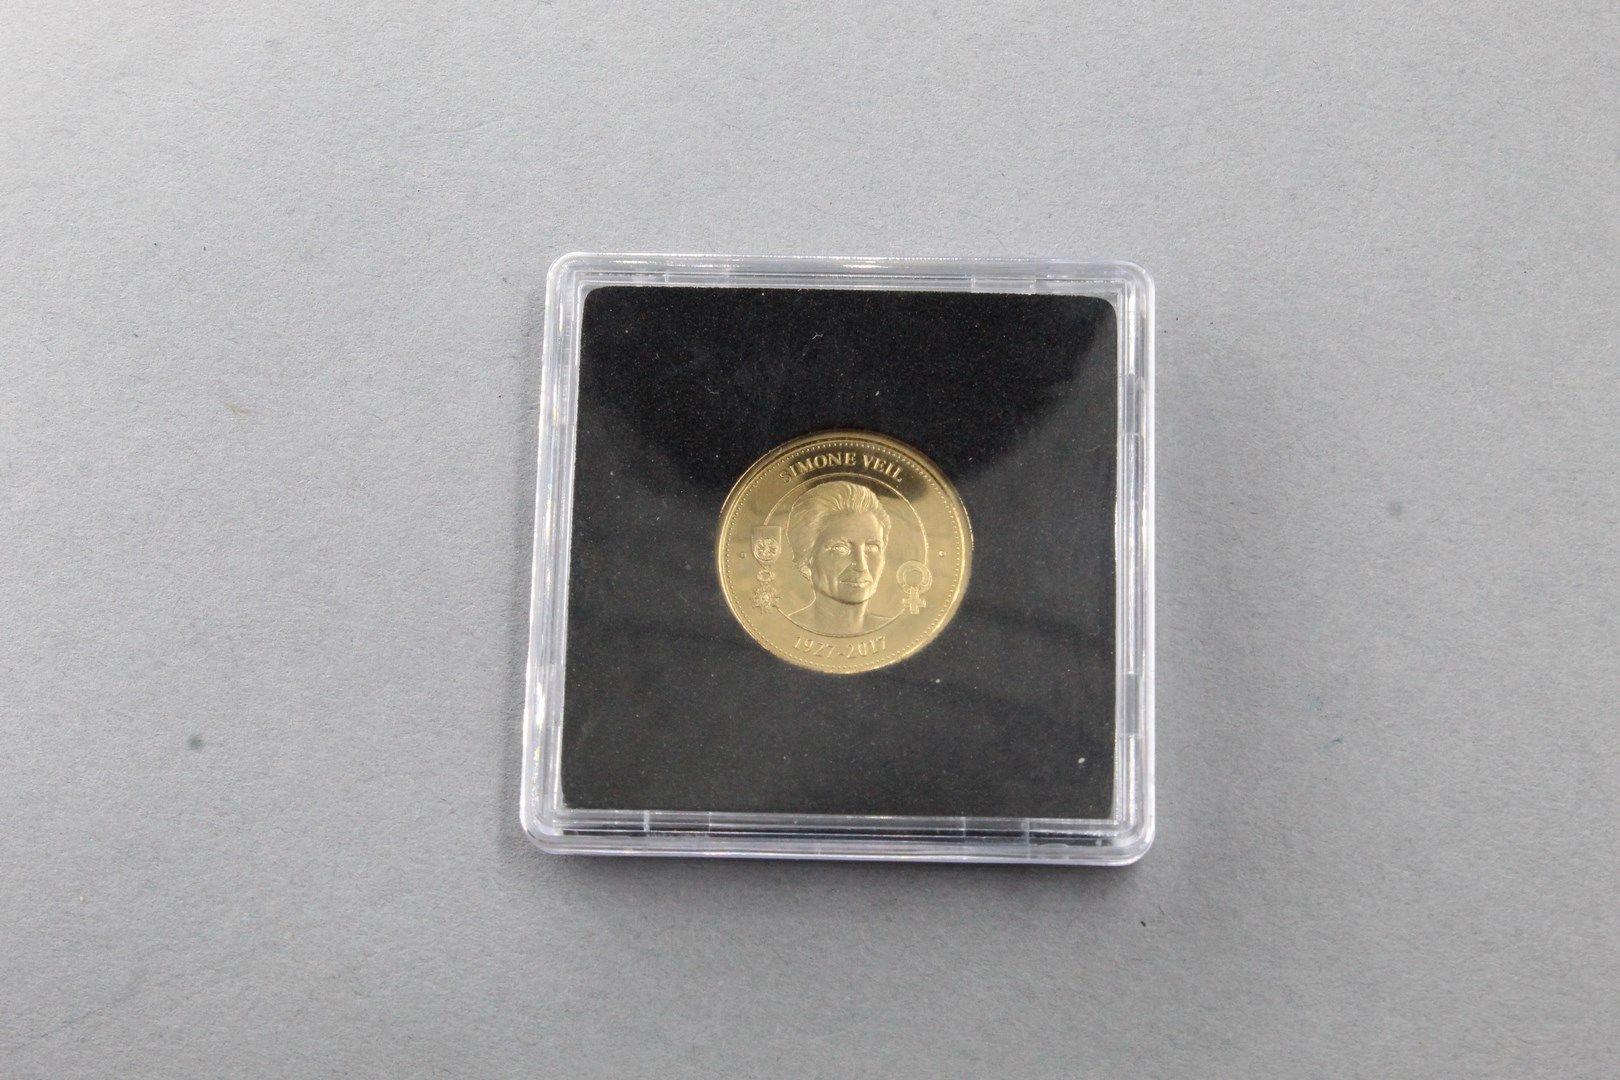 Null Moneda de oro conmemorativa con la efigie de Simone Weil. 

SUP. 

Peso : 3&hellip;